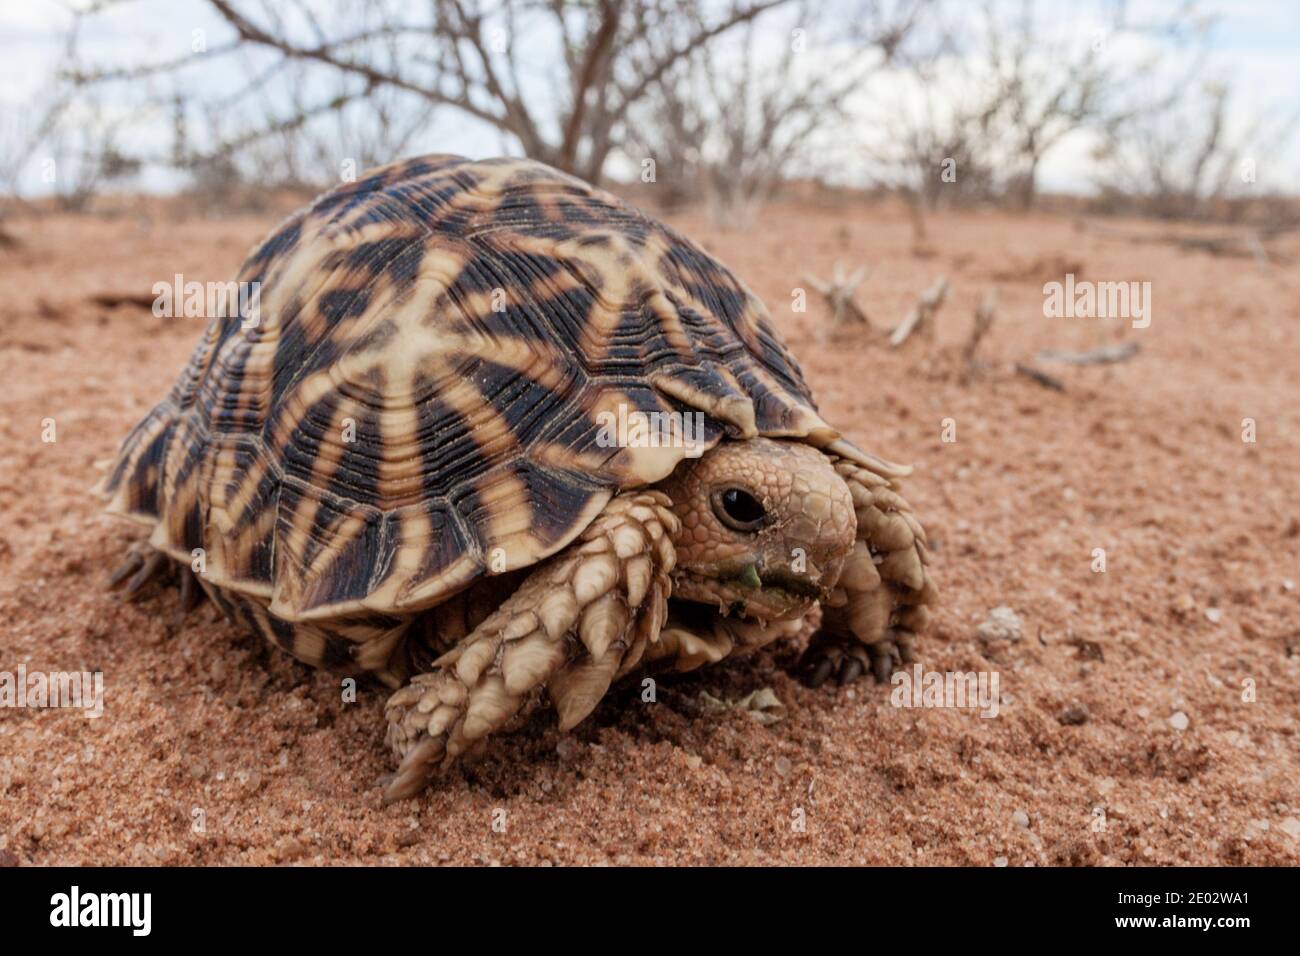 Kalahari Tent Tortoise, Psammobates oculifer, Kalahari Basin, Namibia Stock Photo